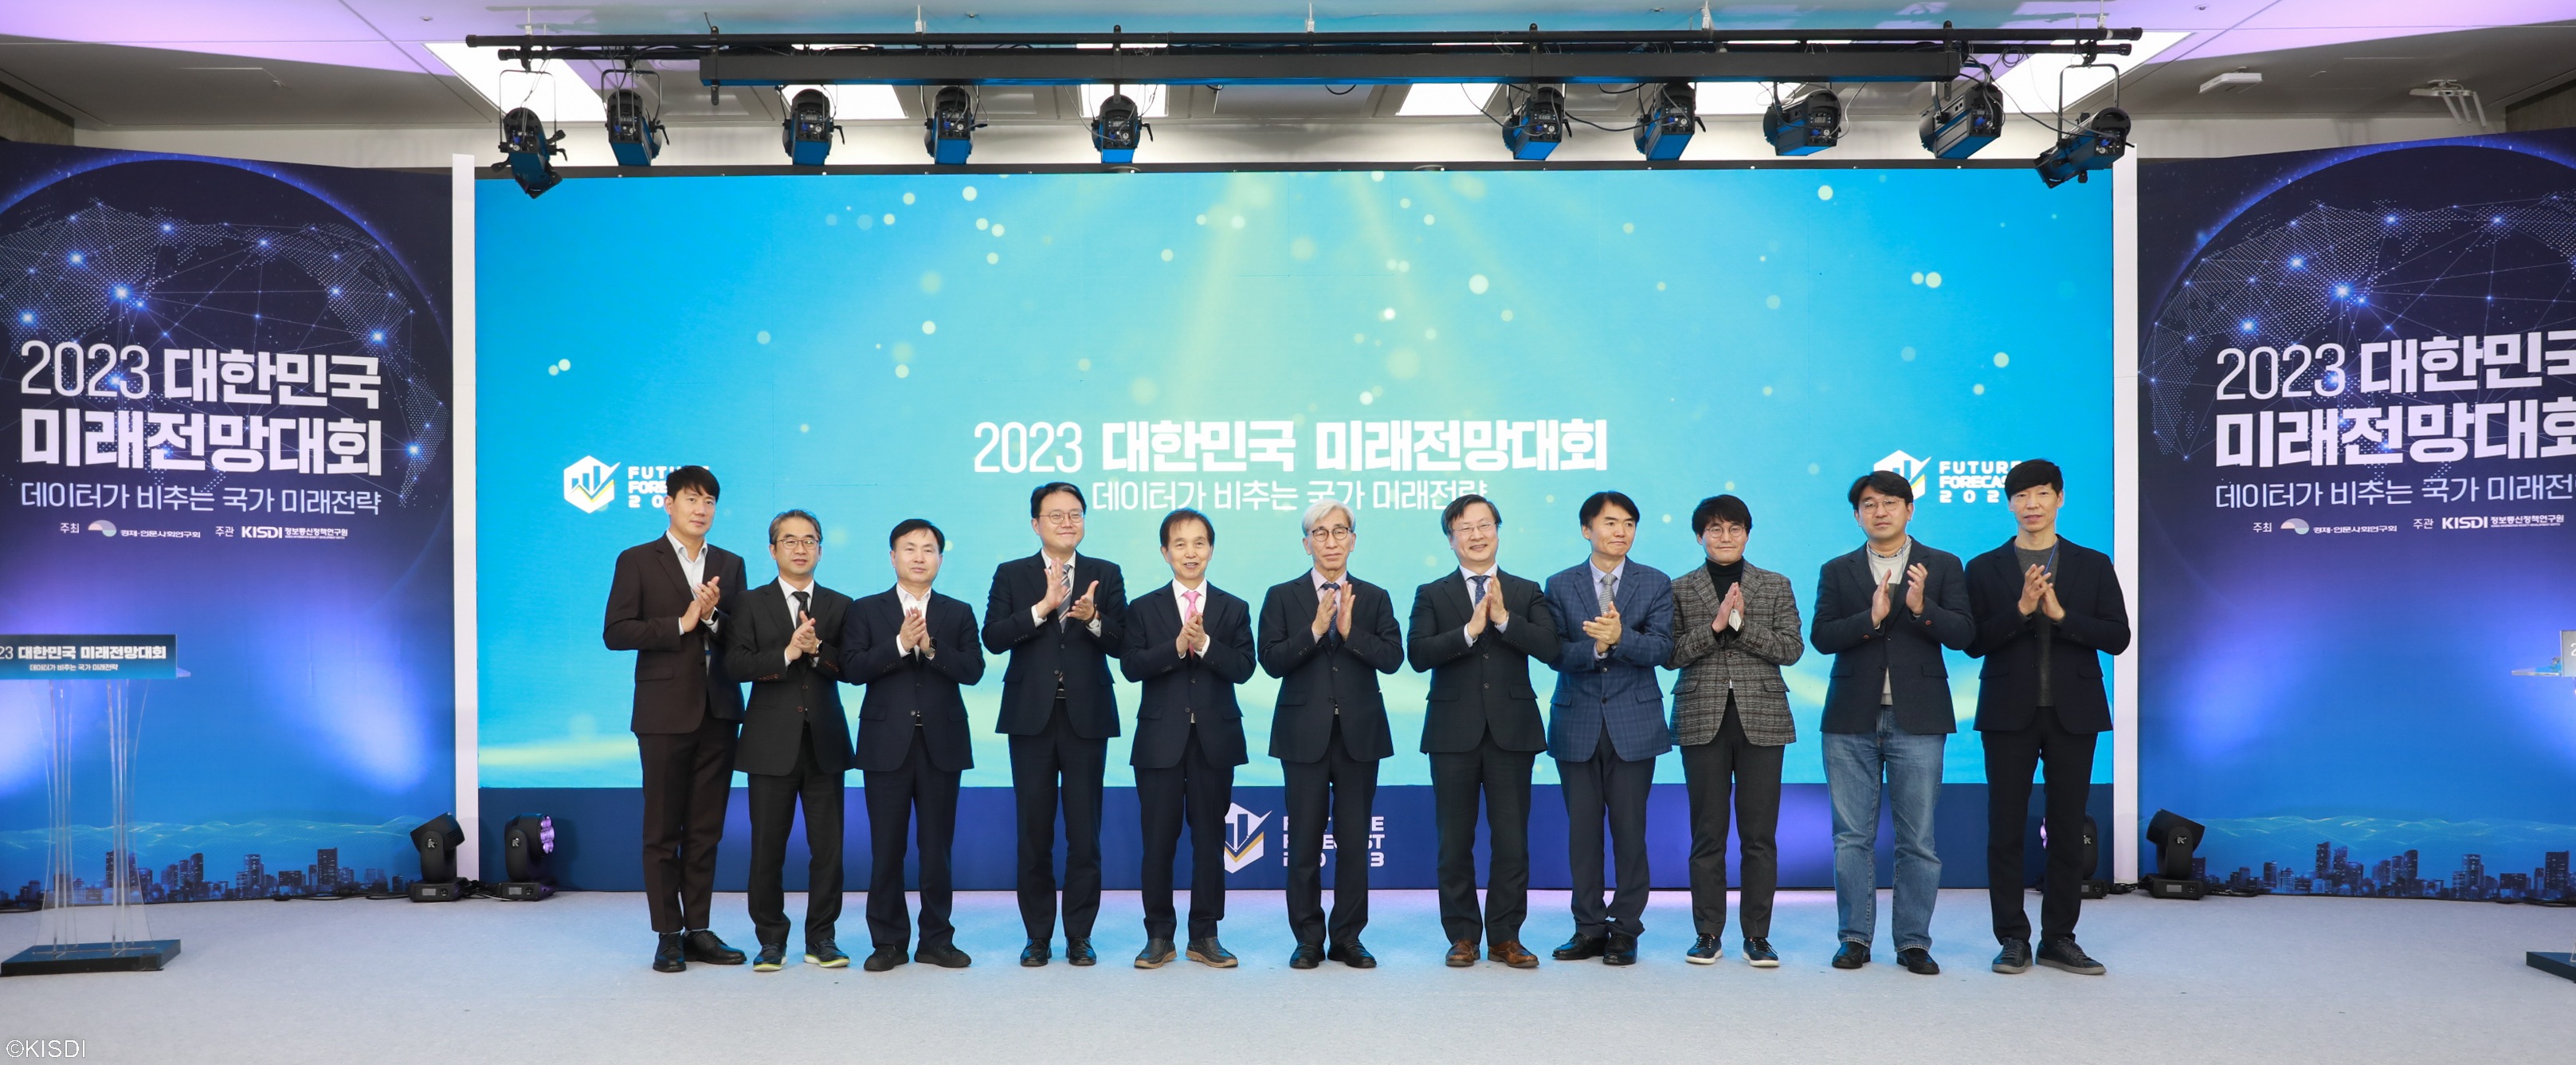 2023 대한민국 미래전망대회